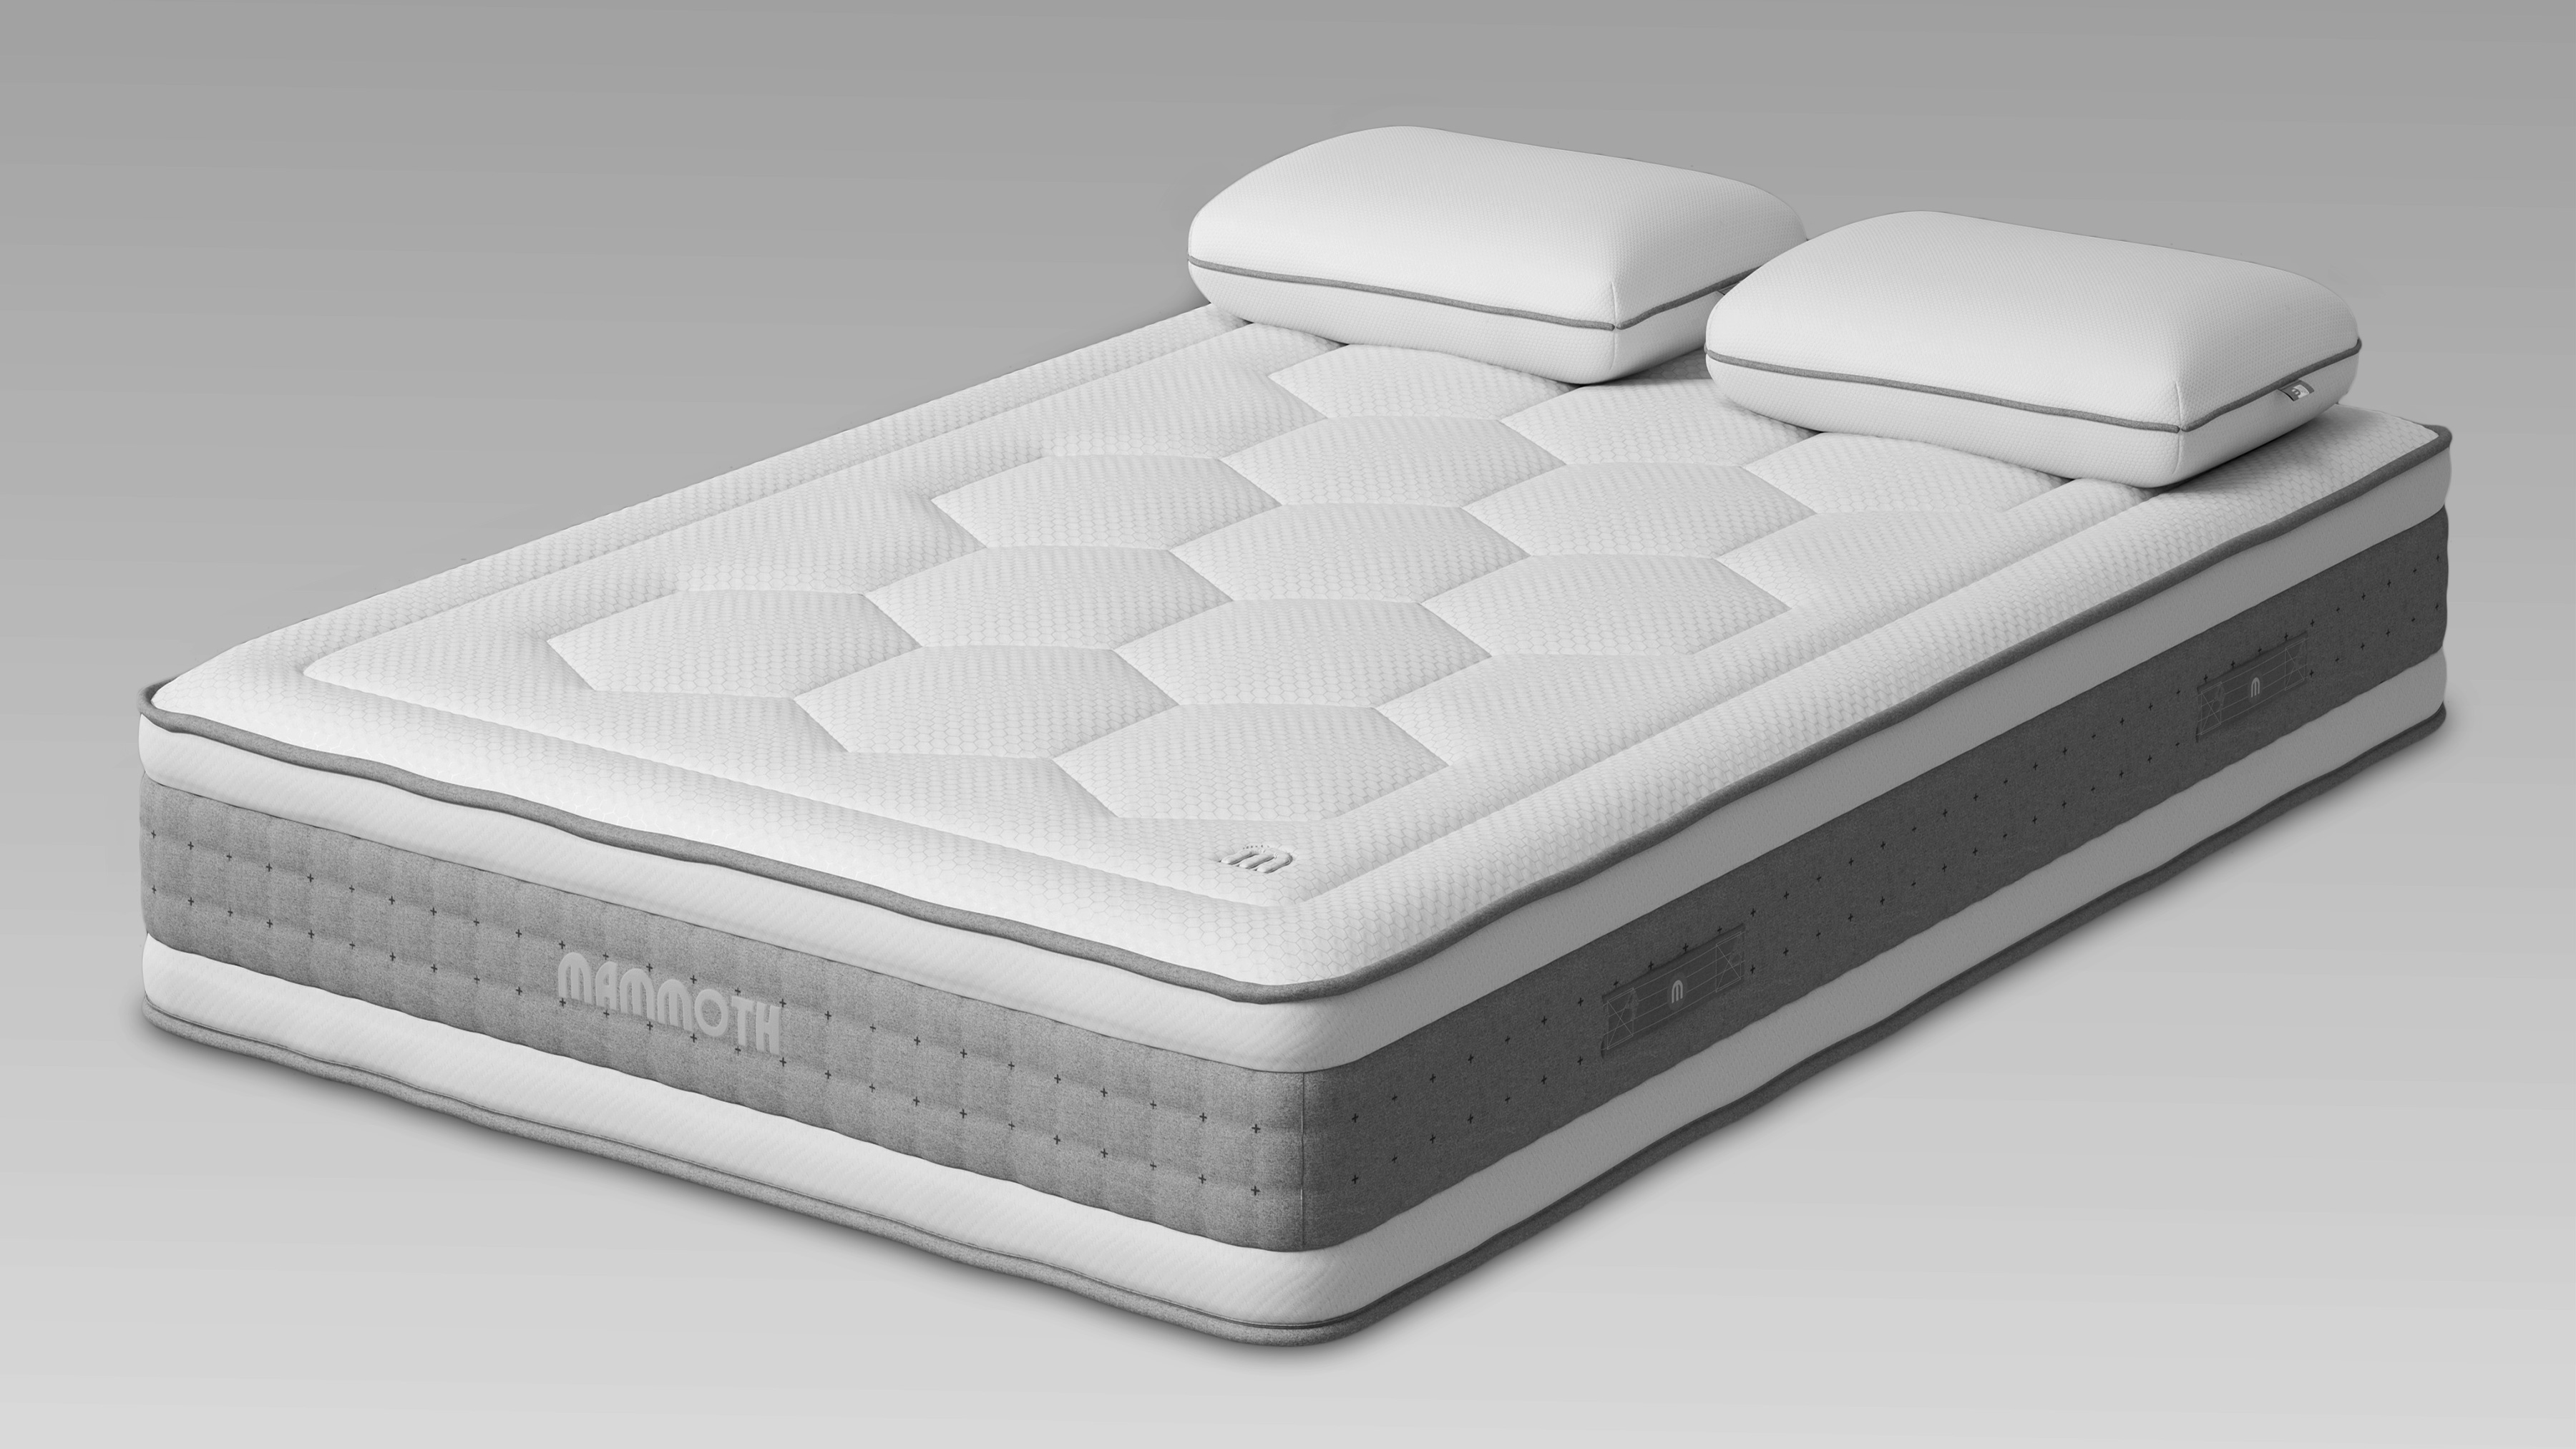 mammoth 3000 mattress review